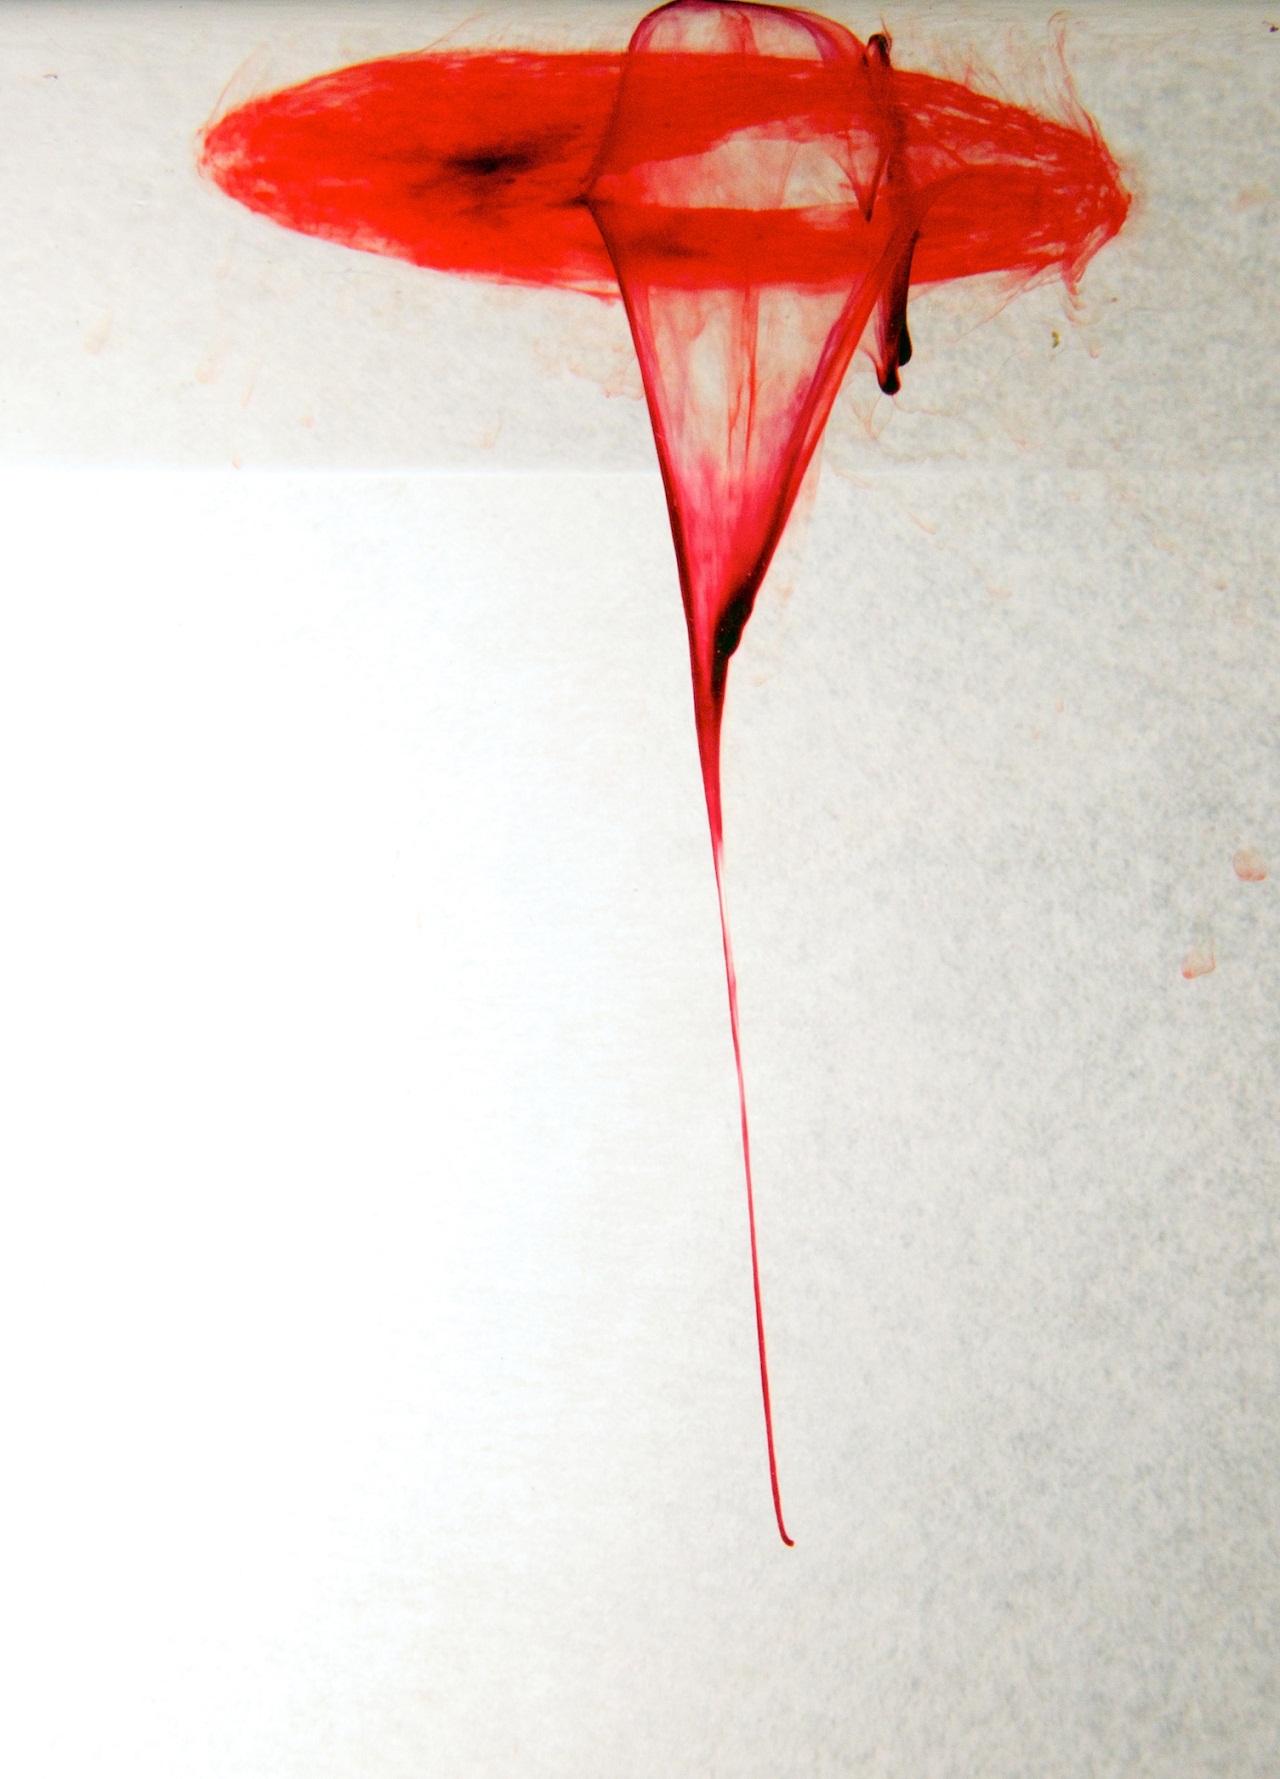 Jen Lewis - artystka, która tworzy obrazy krwią menstruacyjną